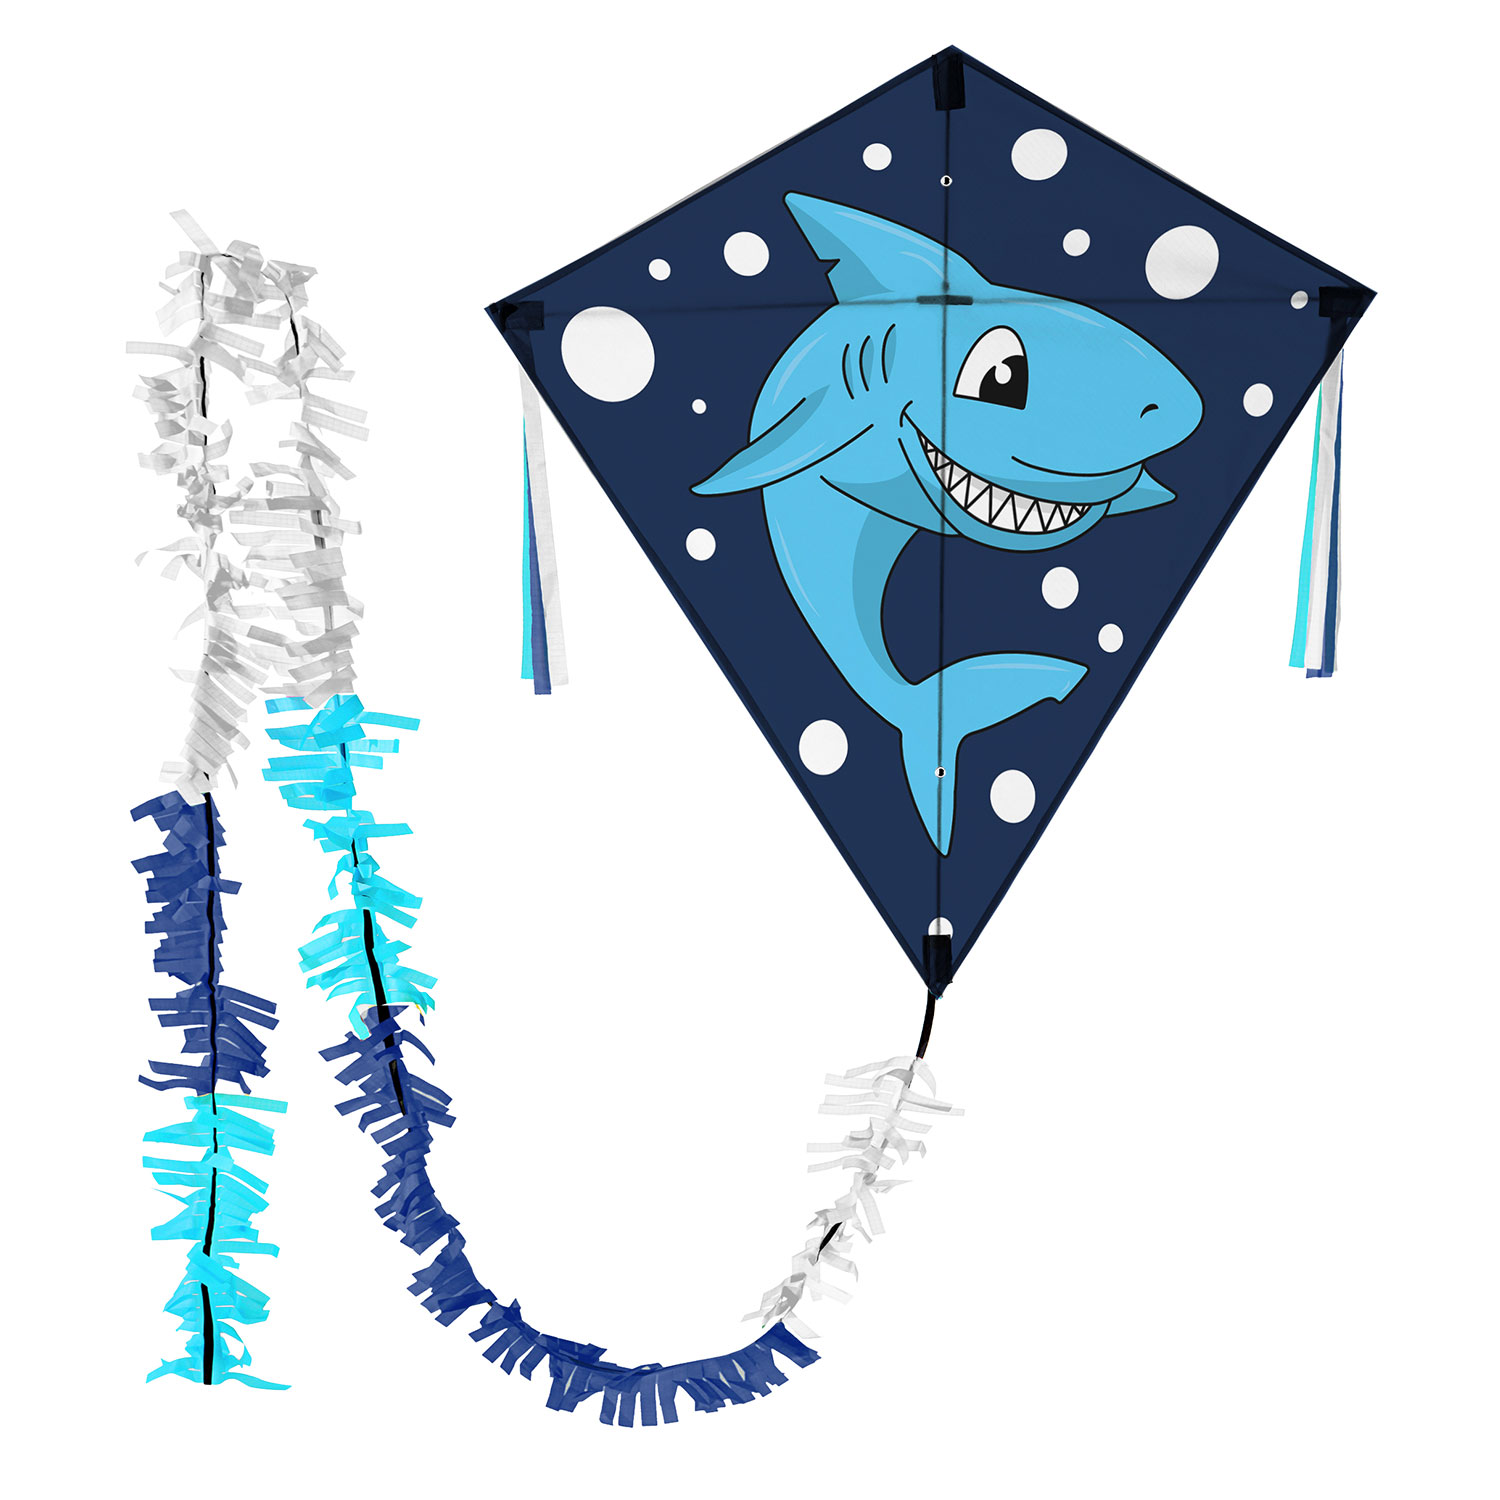 Witziger blauer Rautendrachen für Kinder mit Haifisch kaufen!